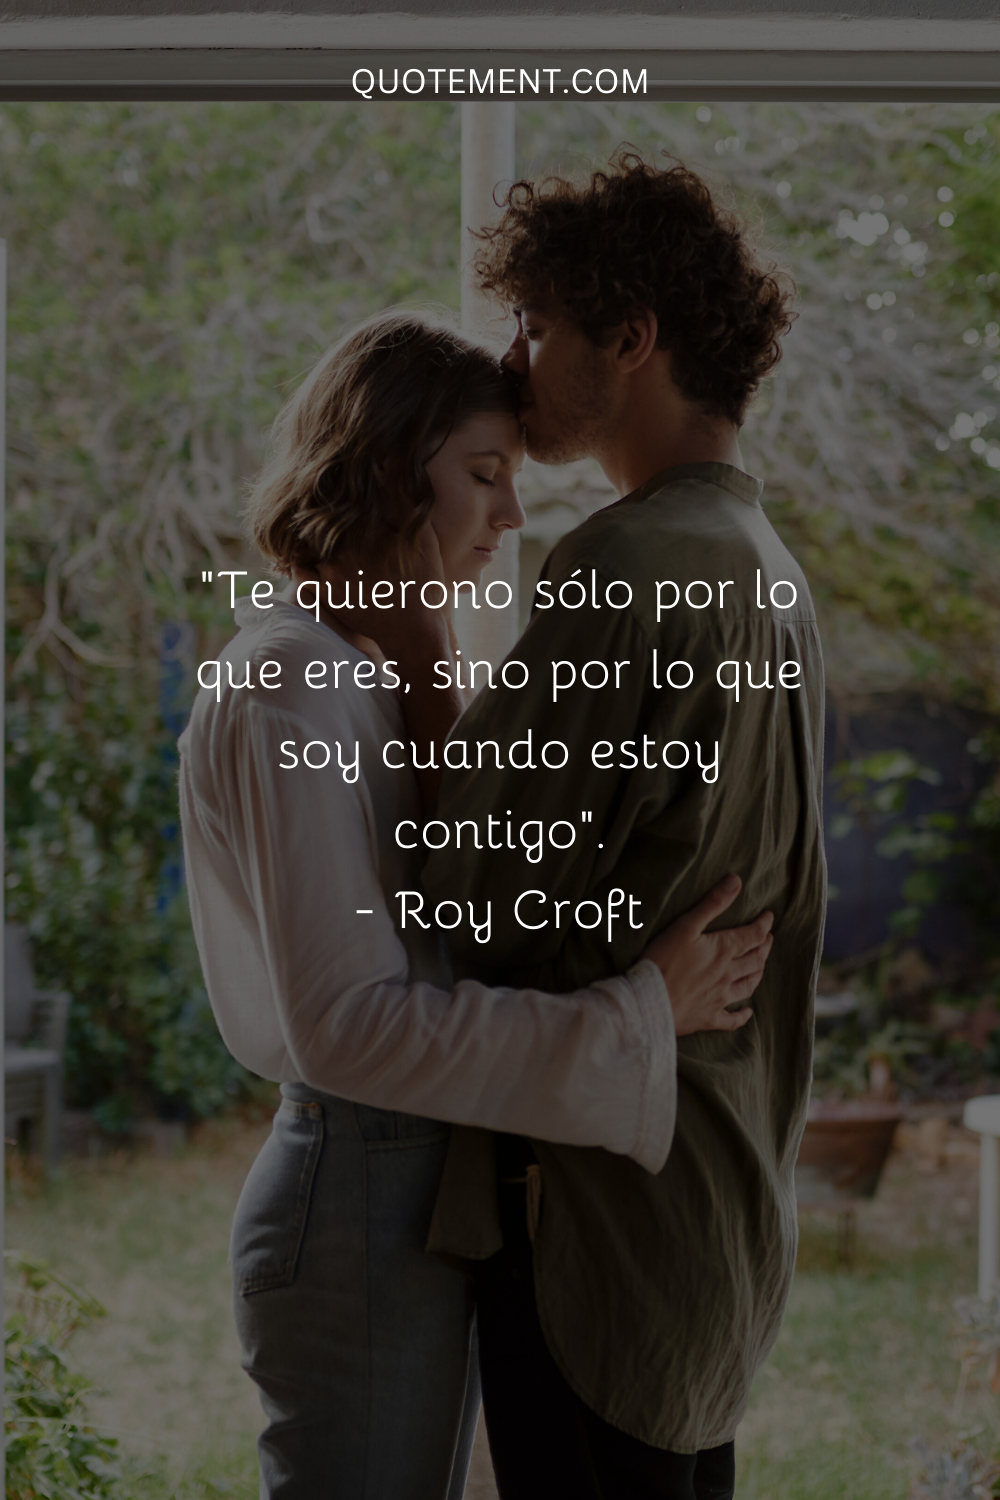 "Te quiero, no sólo por lo que eres, sino por lo que soy cuando estoy contigo". - Roy Croft